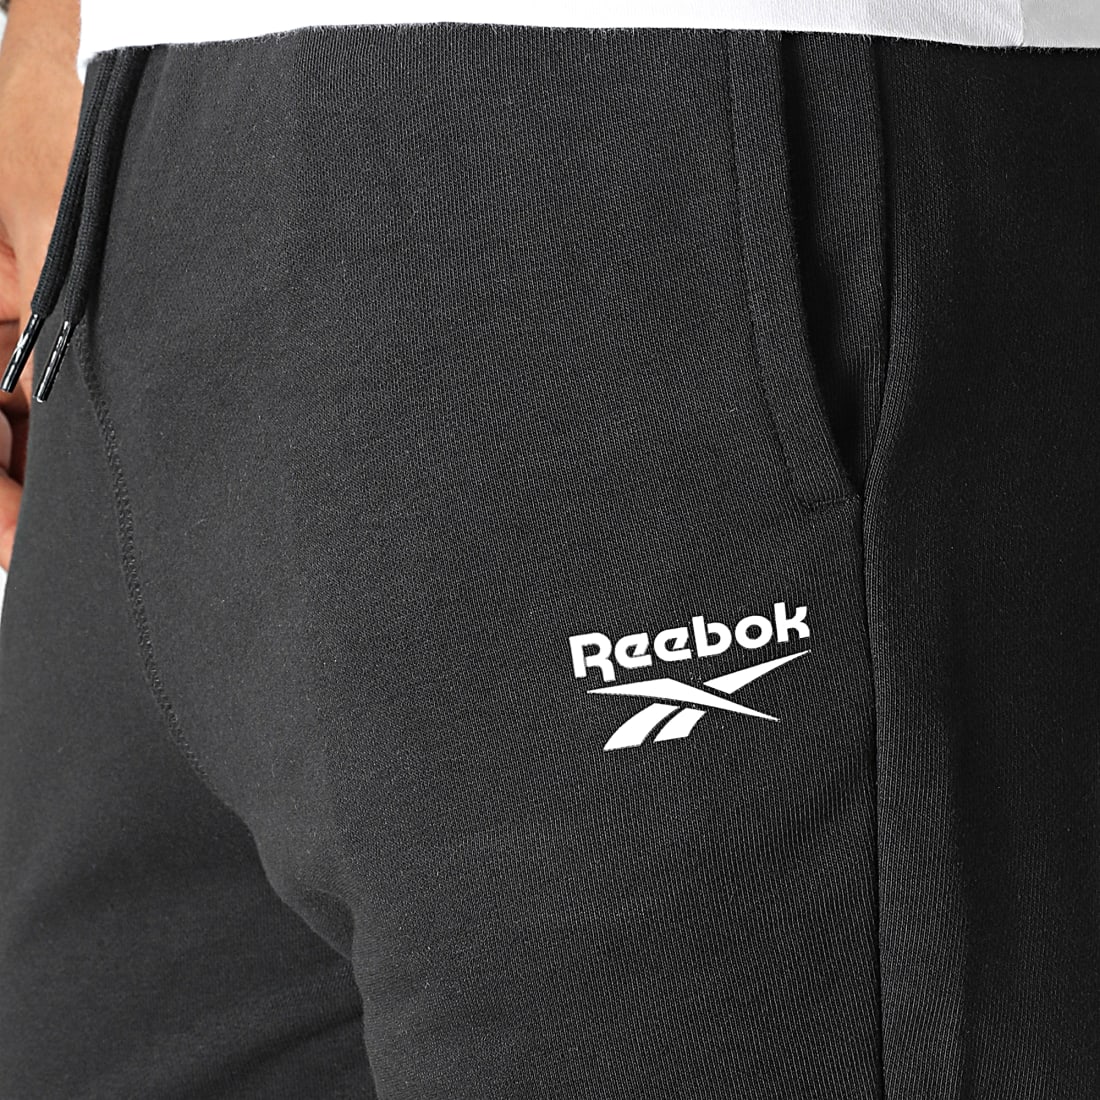 Pantalon jogging homme Reebok, taille M, coloris noir, entièrement doublé,  2 poches en biais sur les cotés, ceinture et bas de jambes élastiqués,  lacet Reebok de serrage à la taille, à l'intérieur.